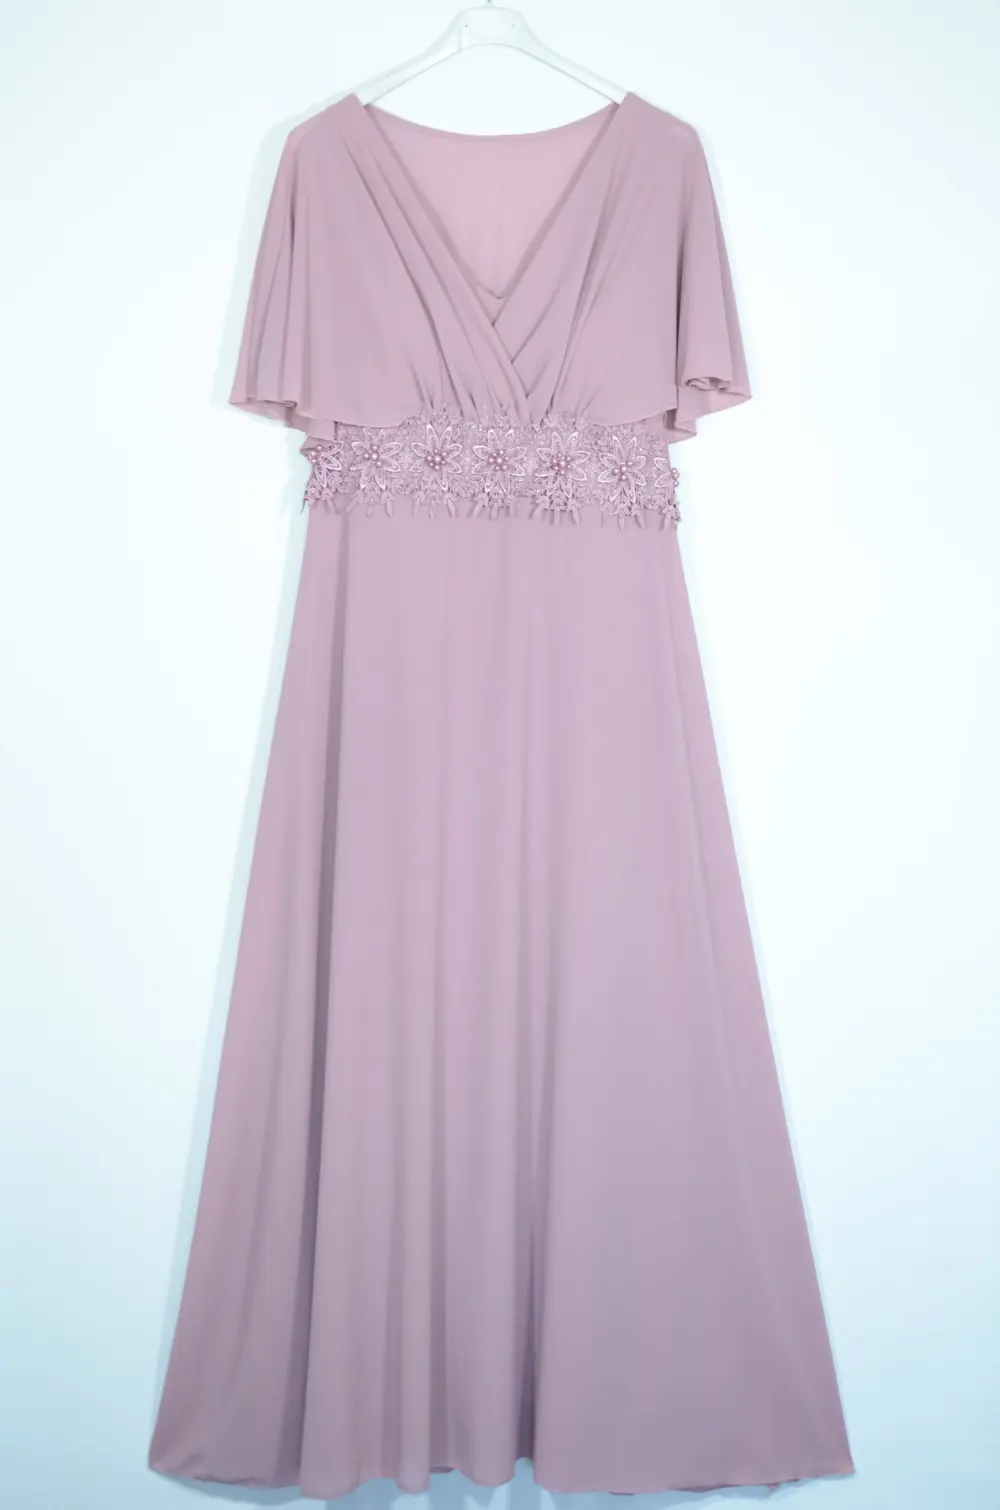 Šaty dlouhé elegantní krátký rukáv dámské (S/M ONE SIZE) ITALSKÁ MÓDA IMPSH24X17158L růžová S/M